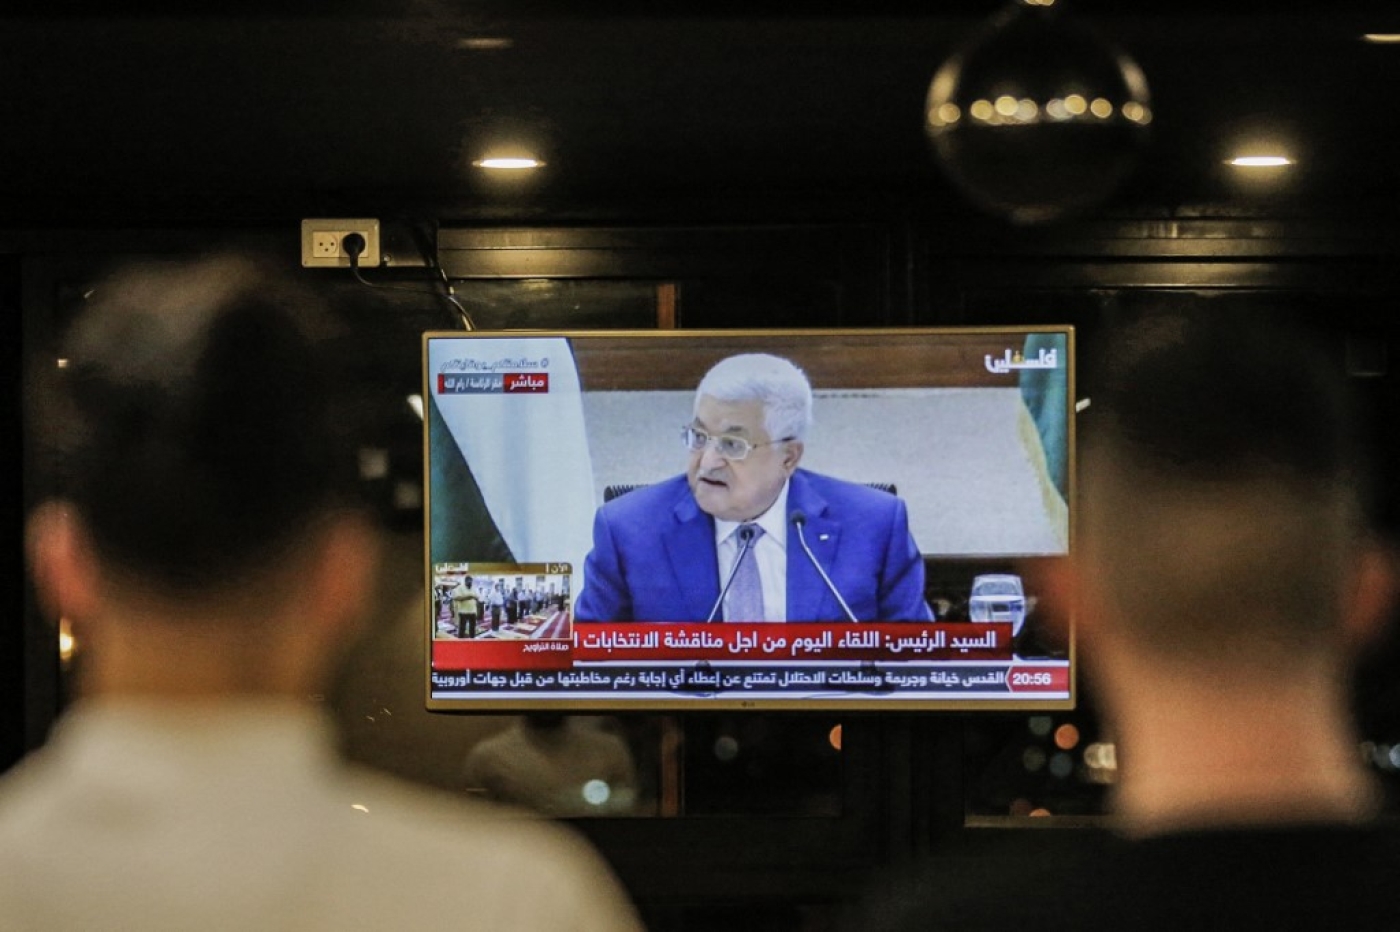 Mahmoud Abbas on a TV in Hebron